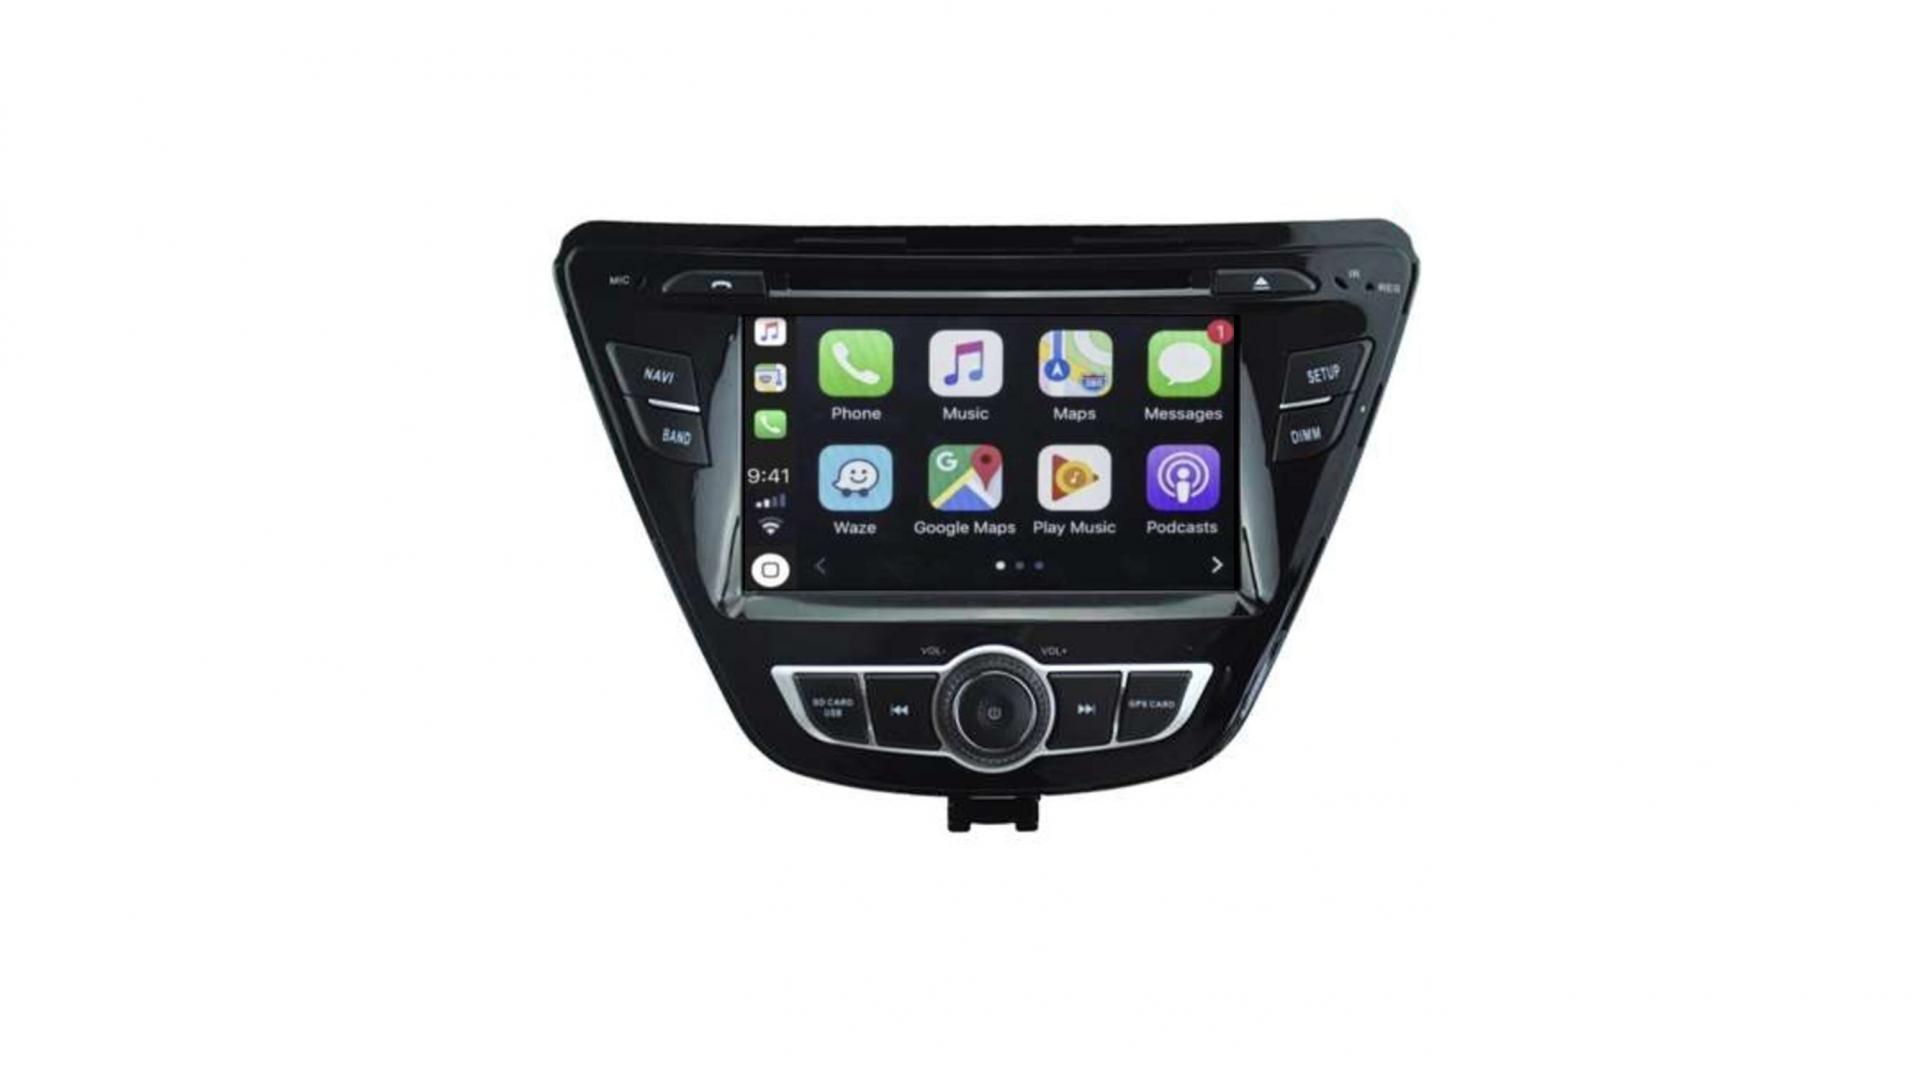 Autoradio androi d auto carplay gps bluetooth hyundai elantra avante 2014 2015 1